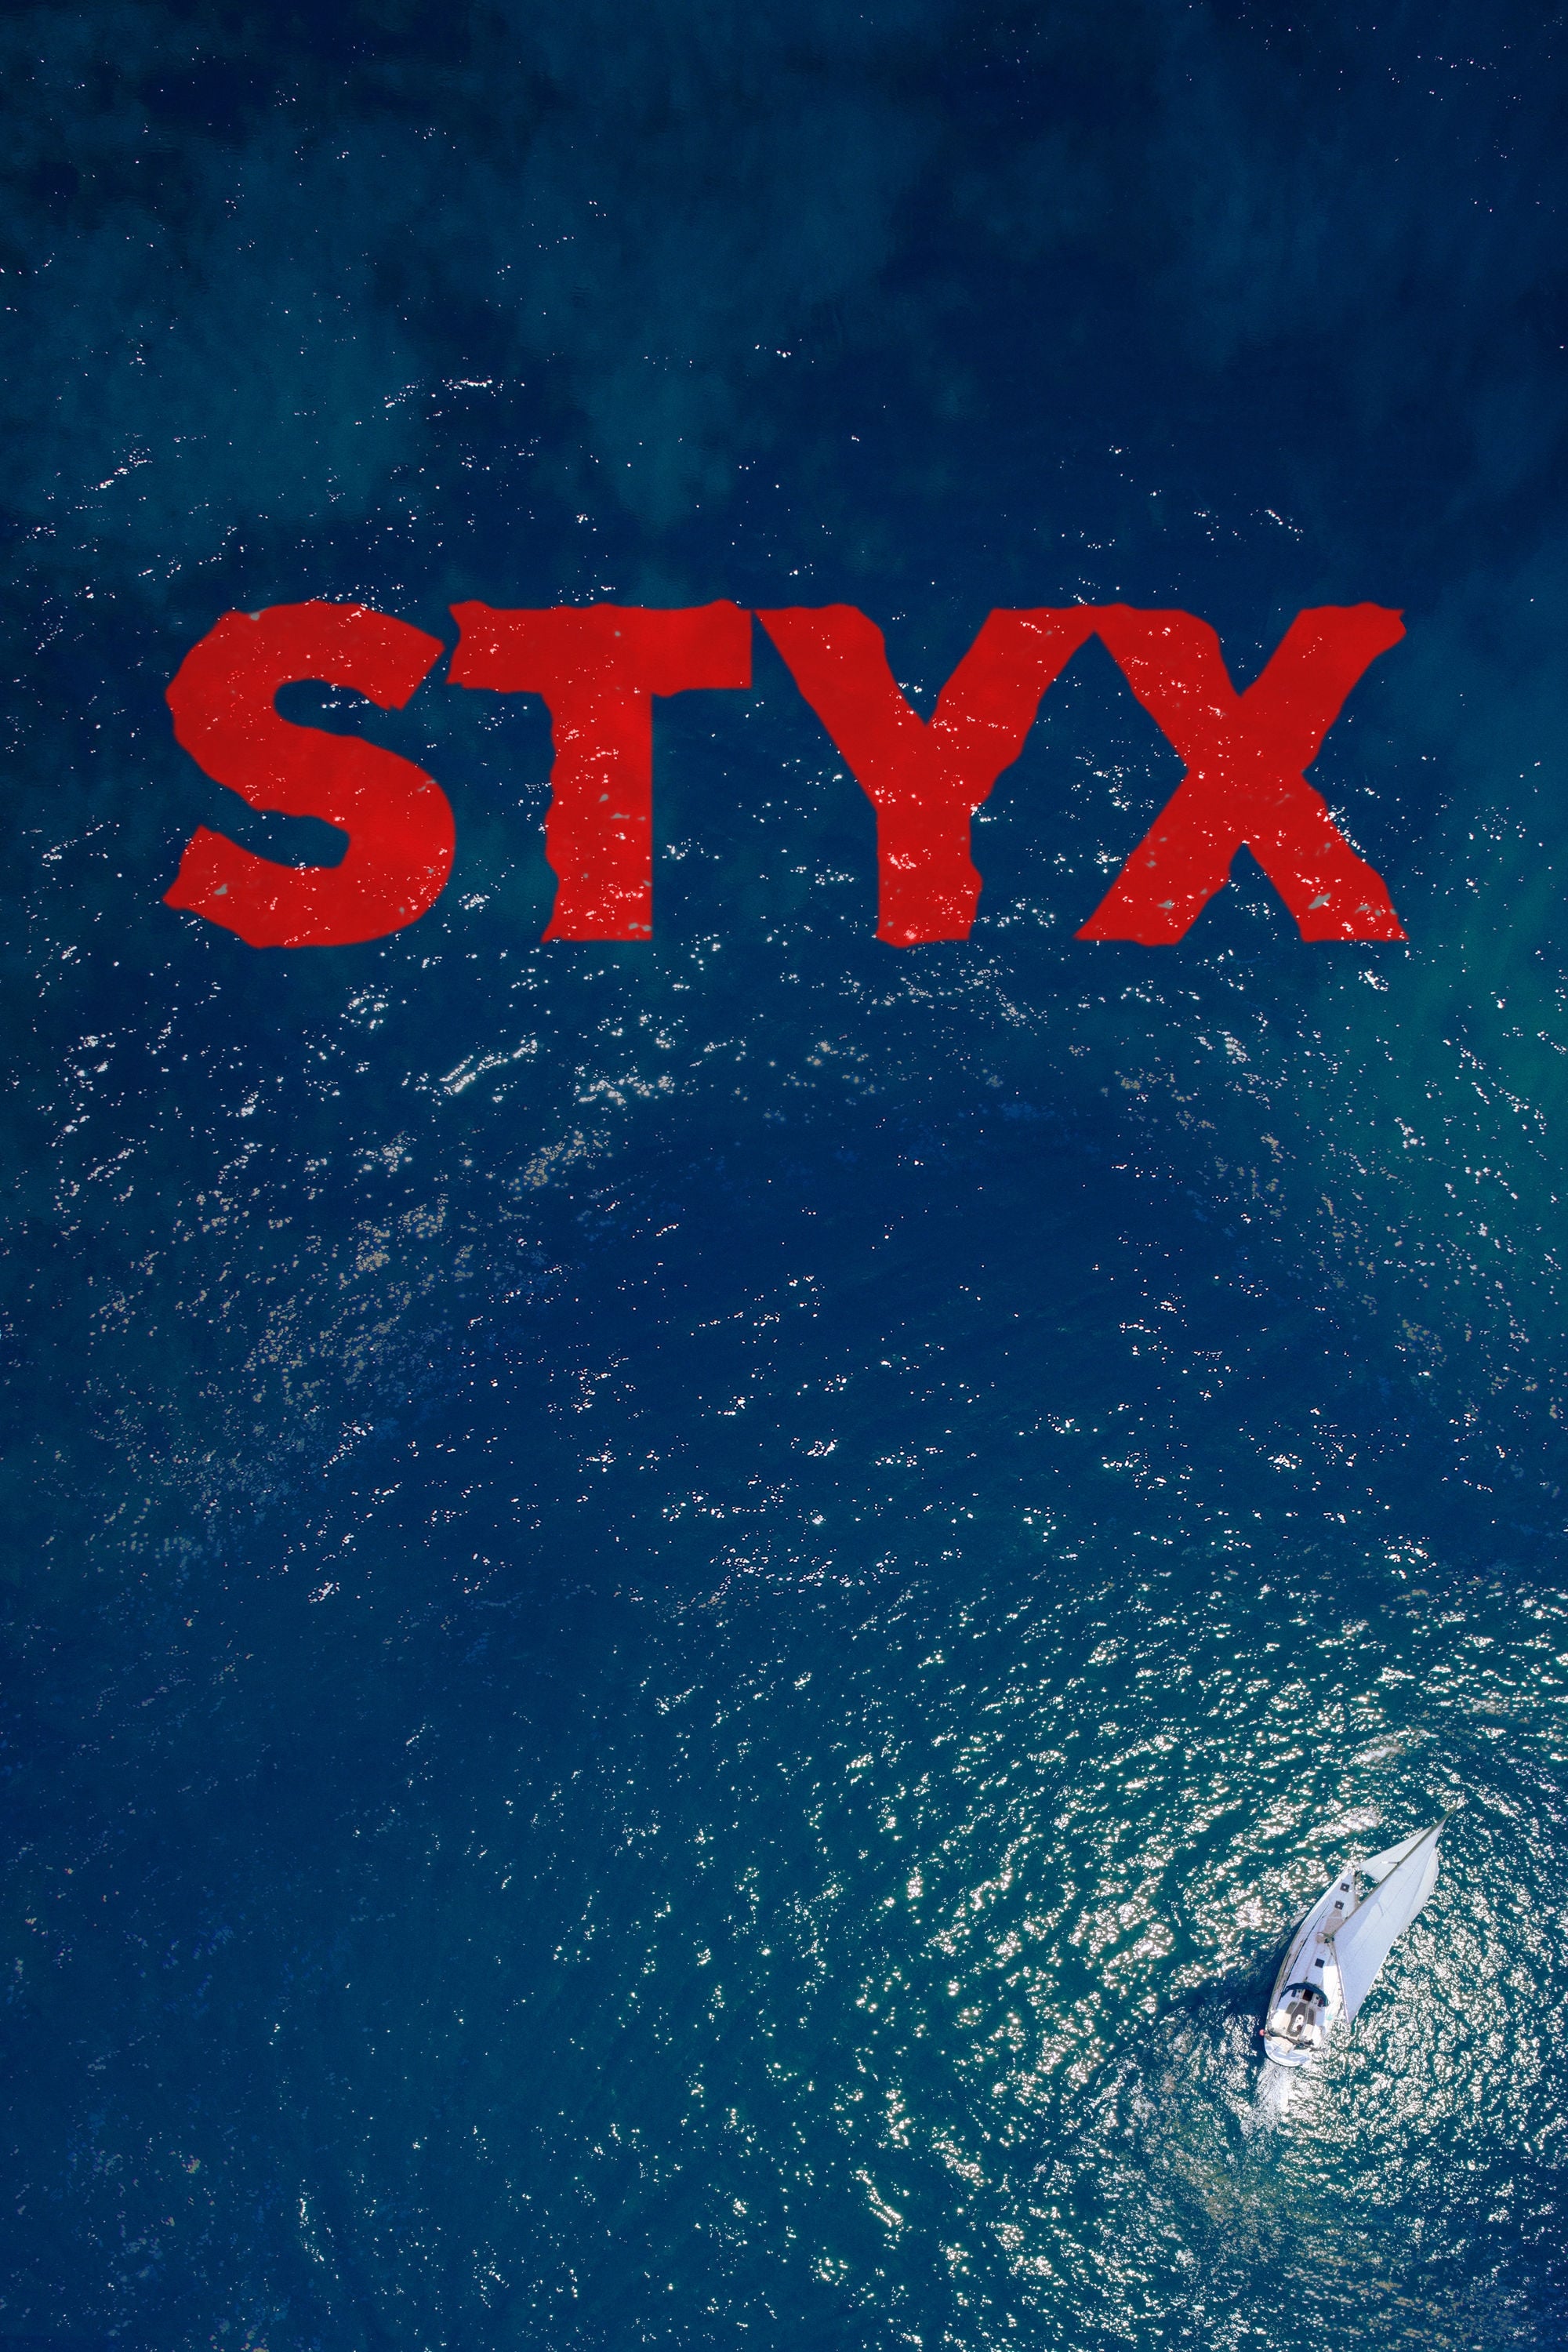 Suối Vàng (Styx) [2018]